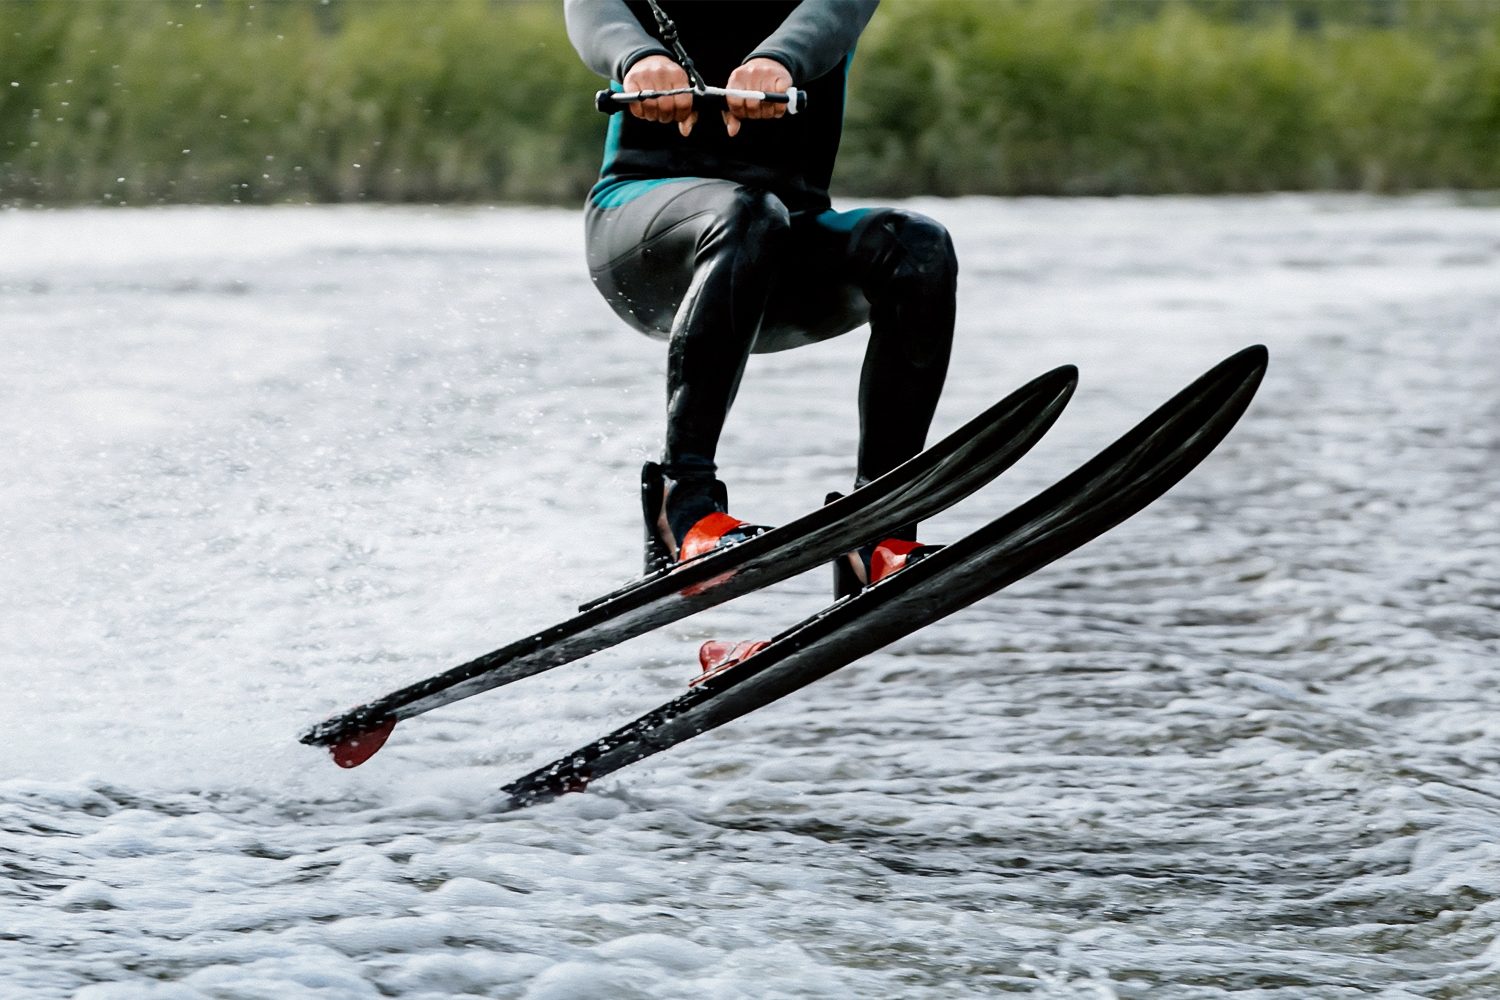 l'atleta salta lo sci nautico dietro la barca a motore sul lago, sport acquatici estivi estremi